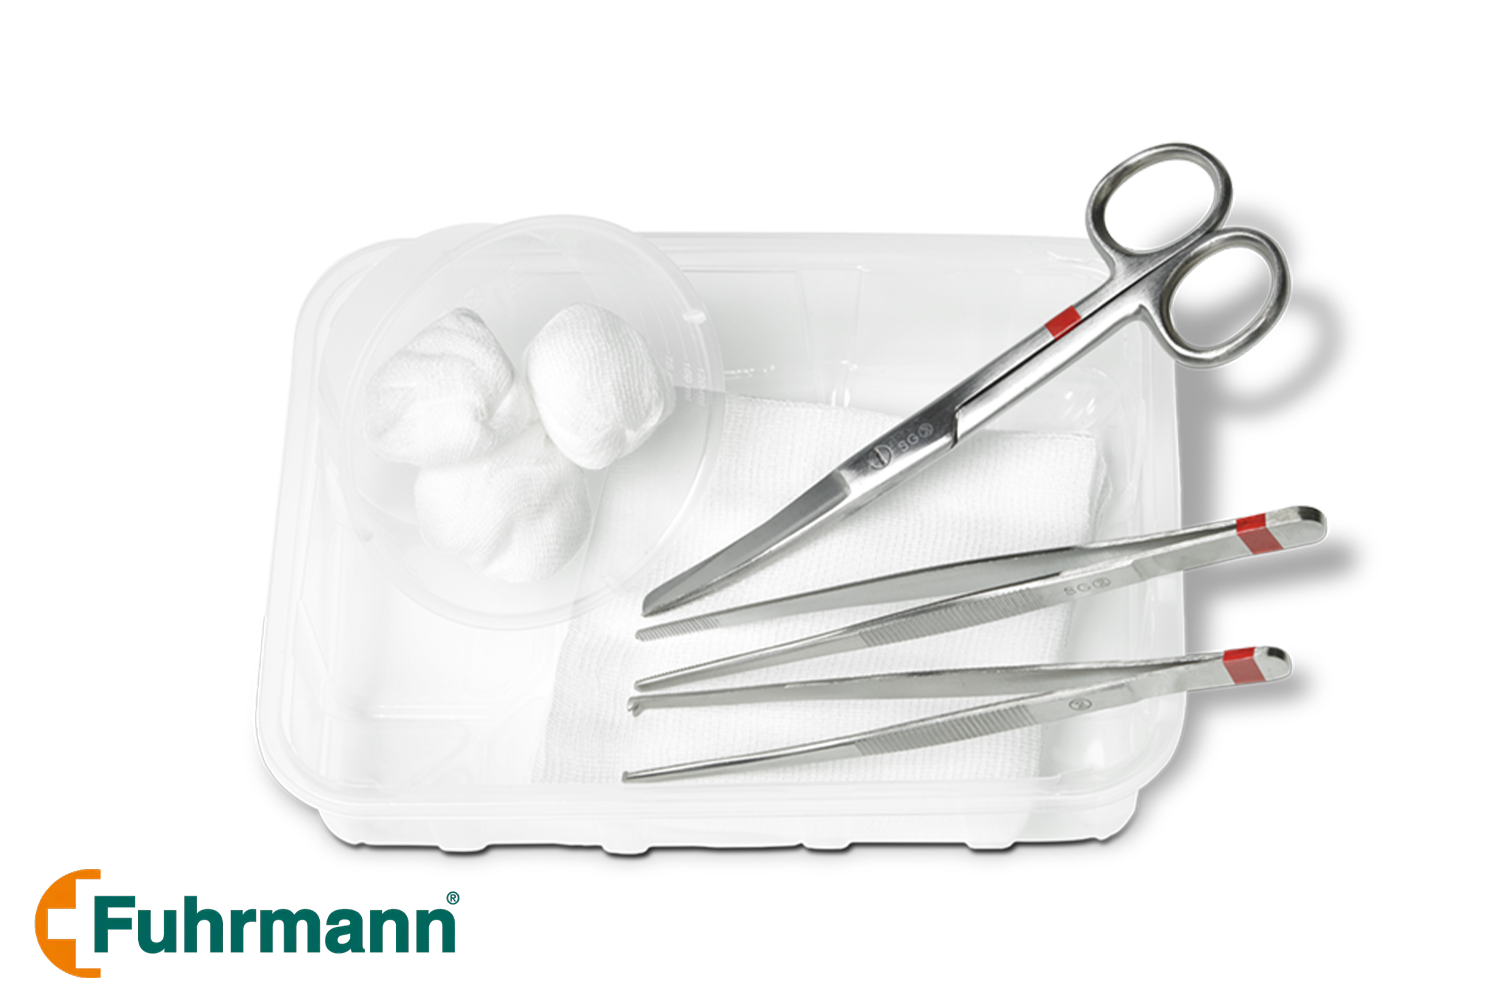 Steriles Verbandwechsel-Set 1 für die optimale Versorgung der Patienten beim Wechseln von Verbänden mit Chirurgischer Schere, Pinzetten und Tupfer